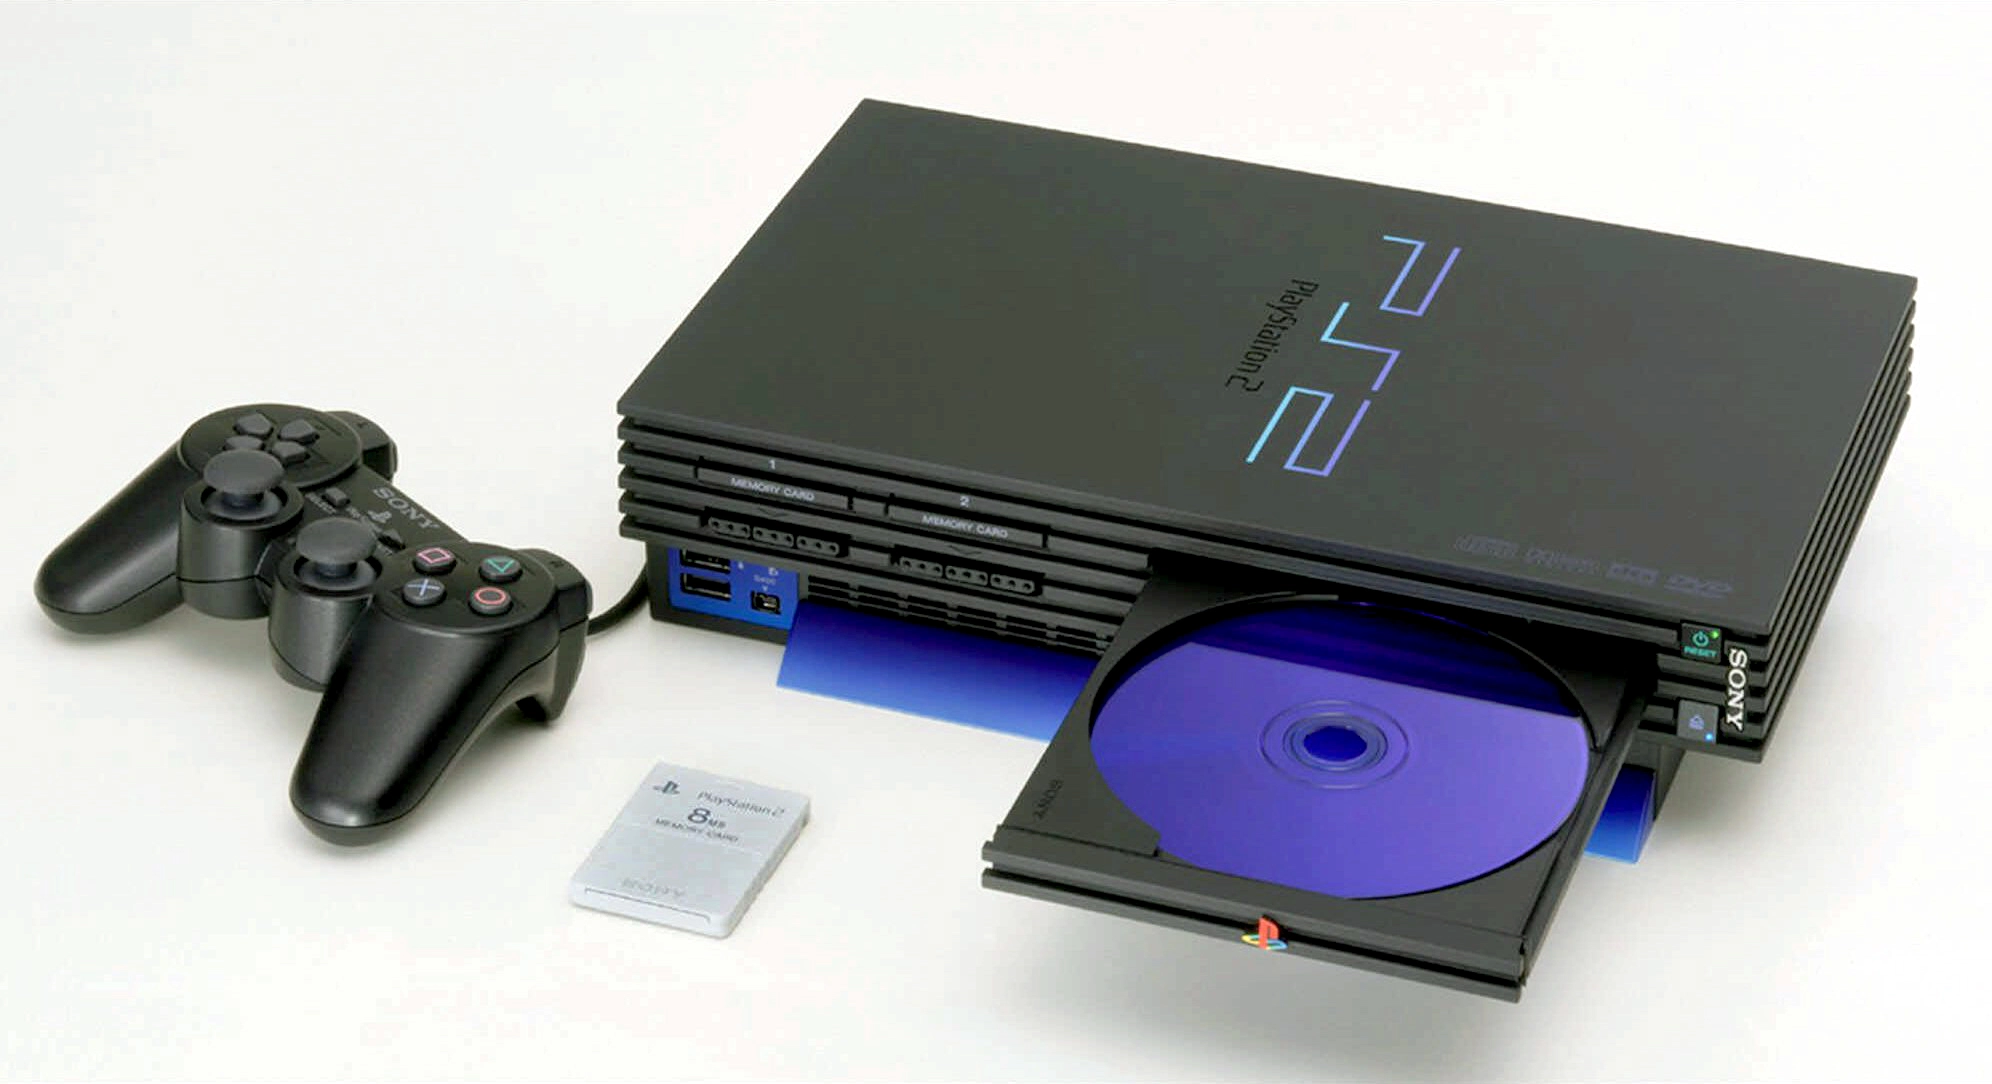 PS2 đã bán được 160 triệu máy theo CEO của Sony PlayStation